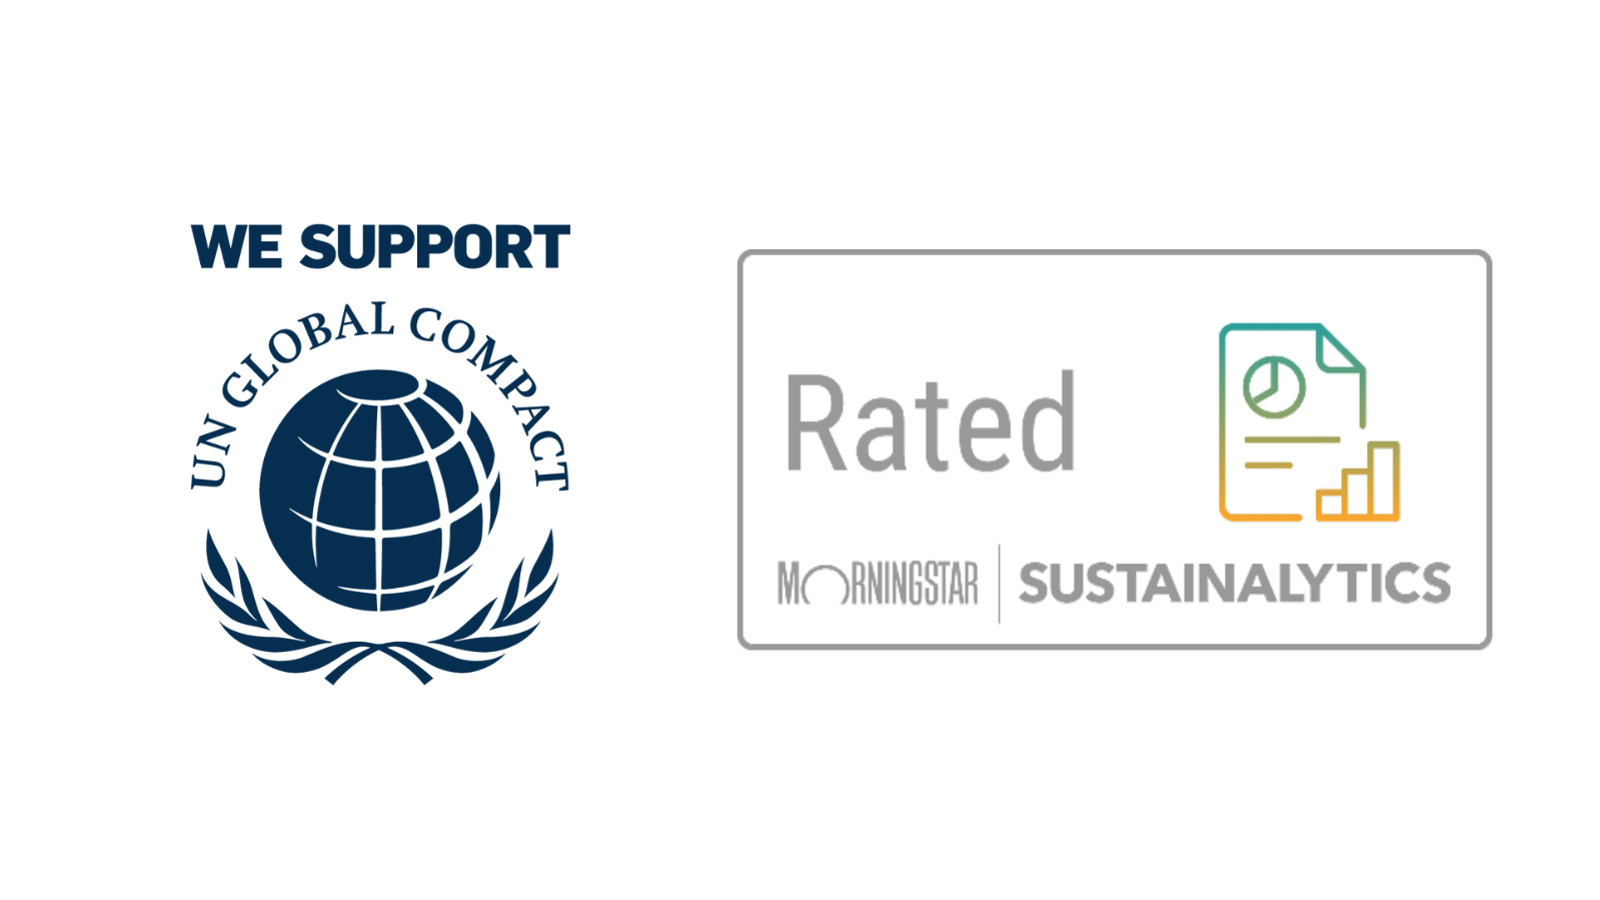 Logos: UN Global Compact, TCFD, Morningstar Sustainalytics 